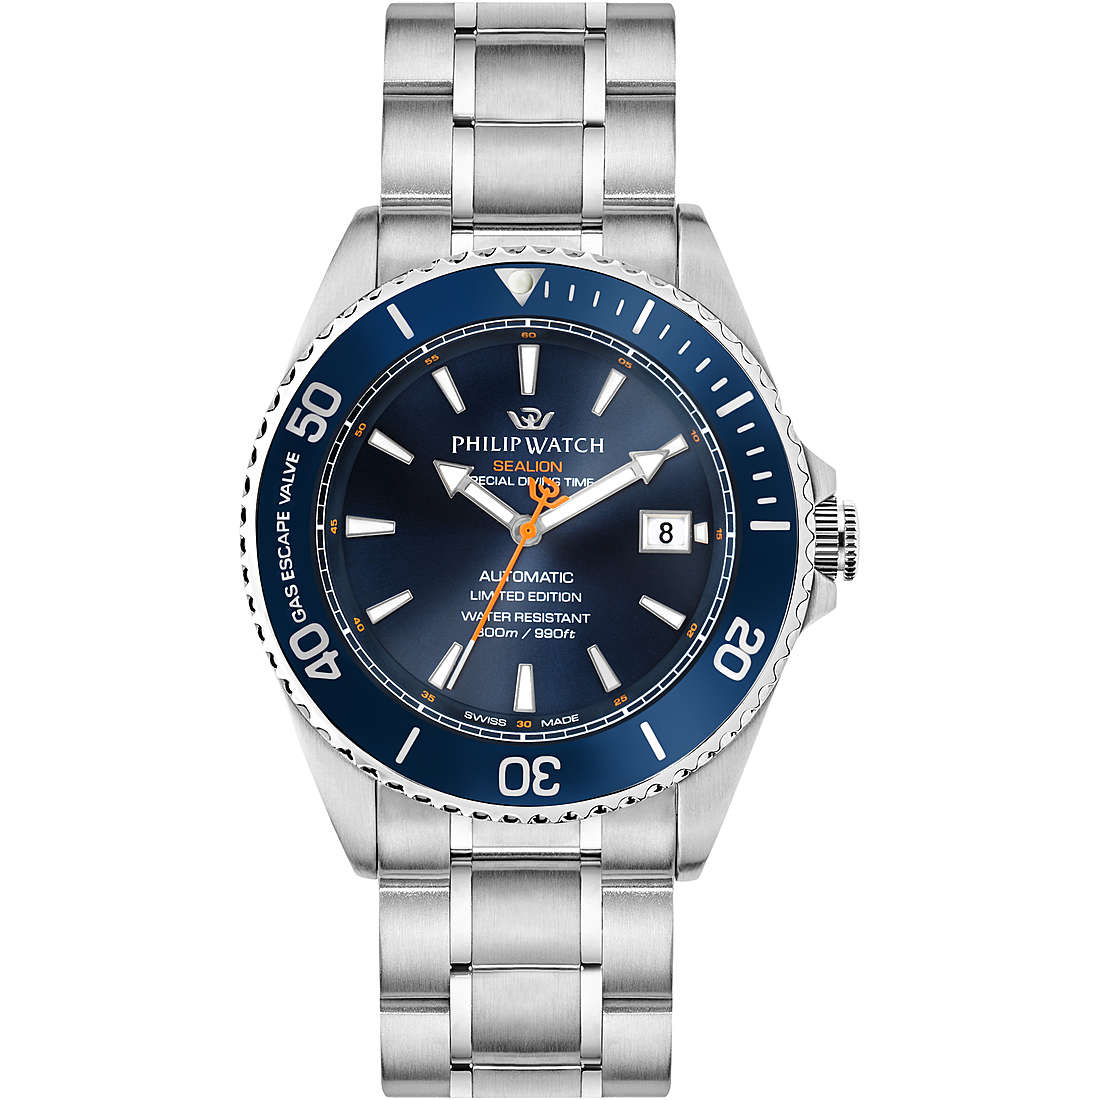 Uhr mechanishe mann Philip Watch Sealion R8223209001